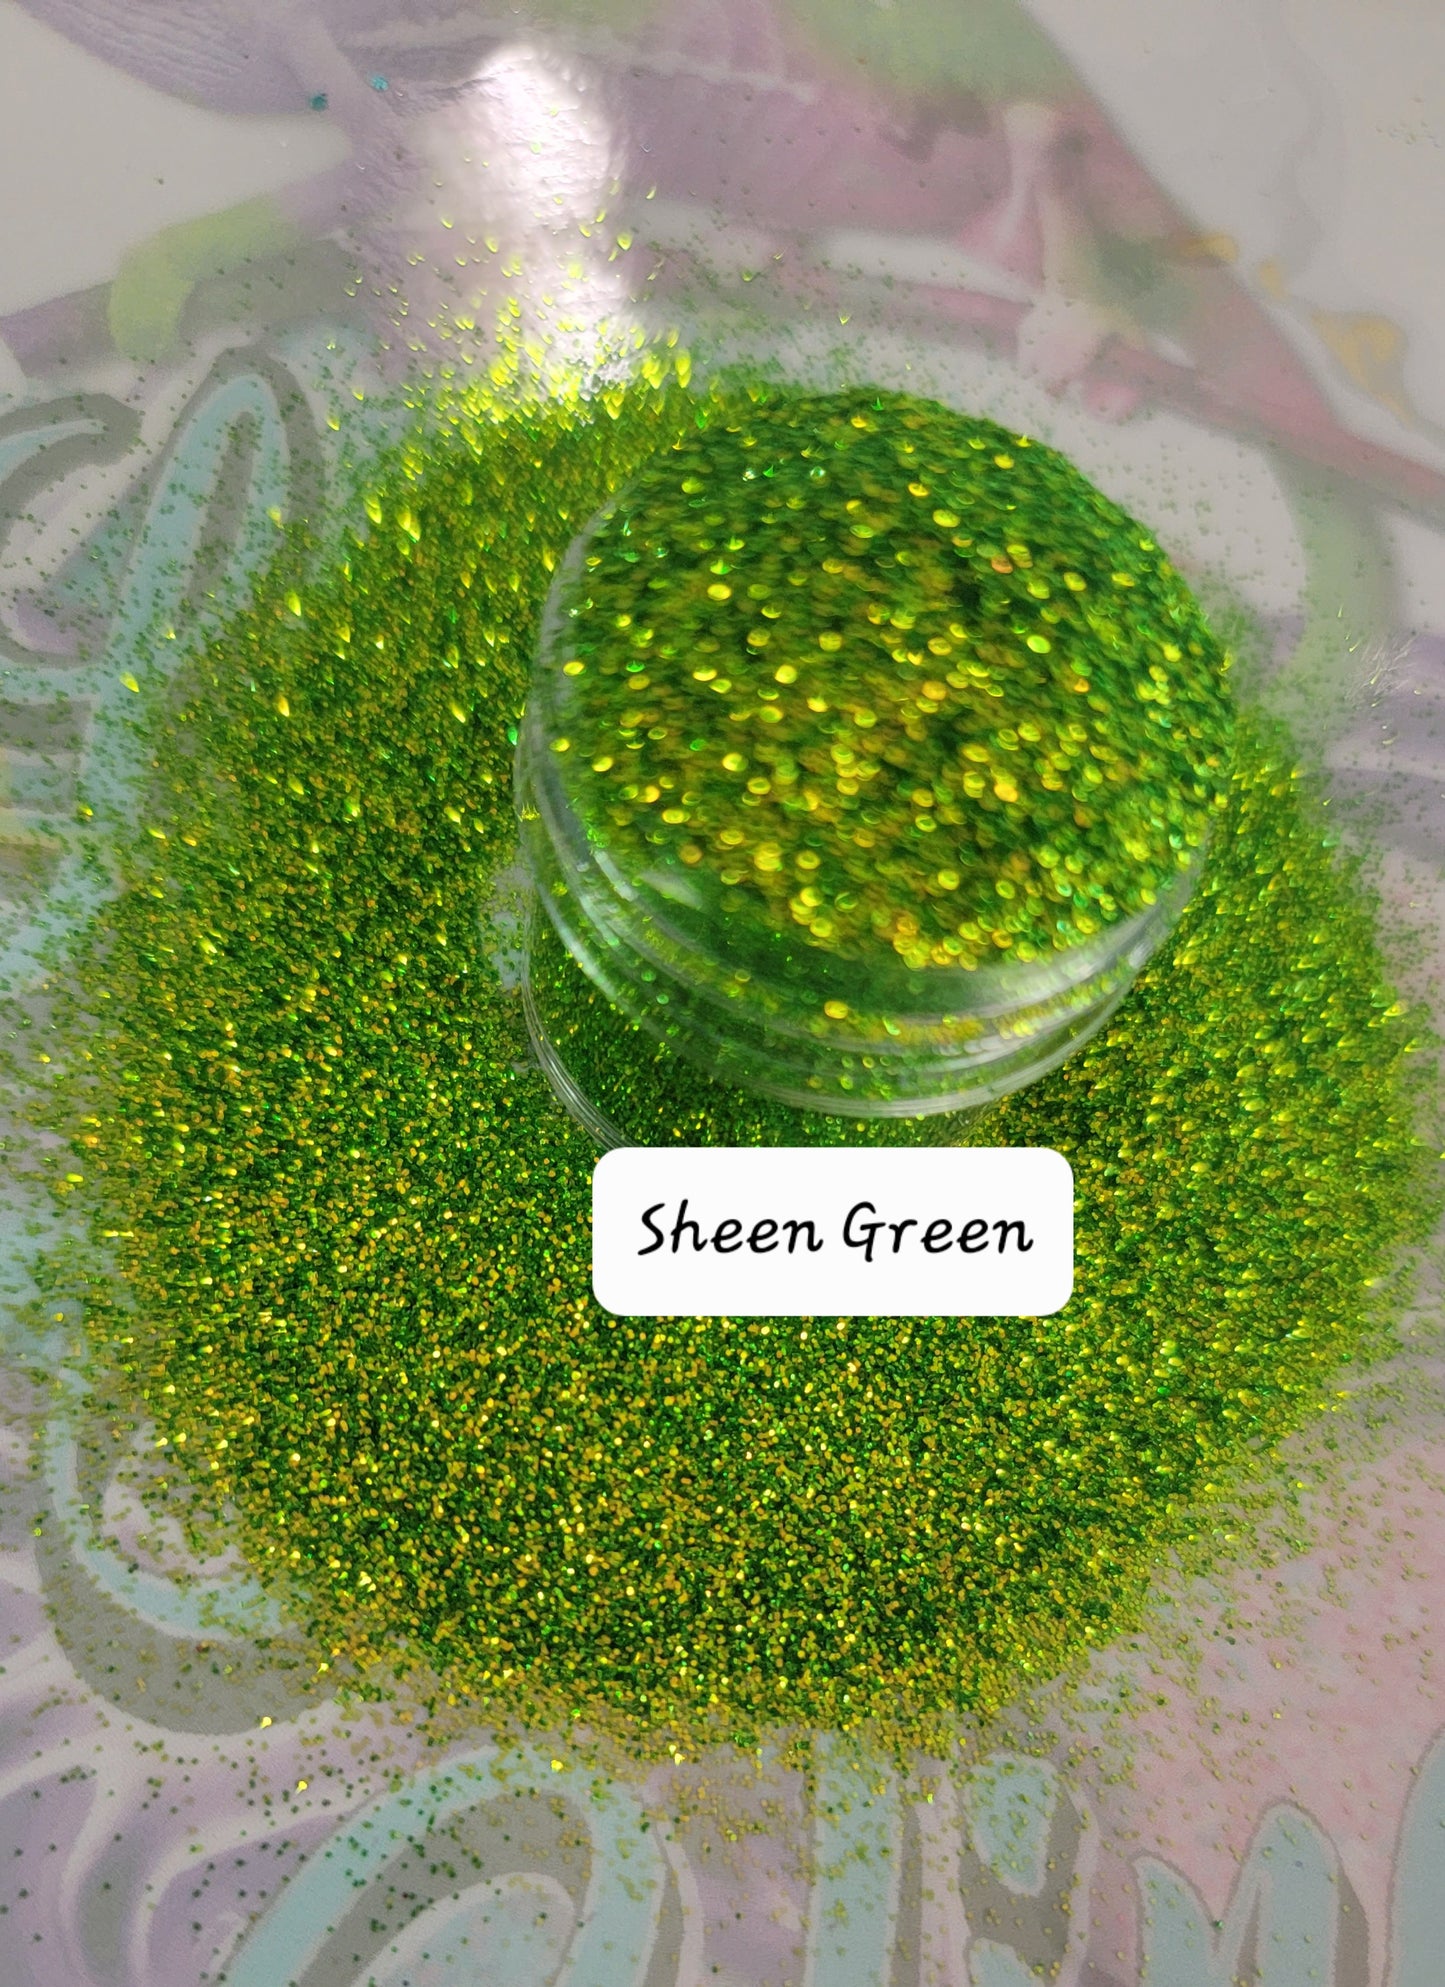 Sheen Green